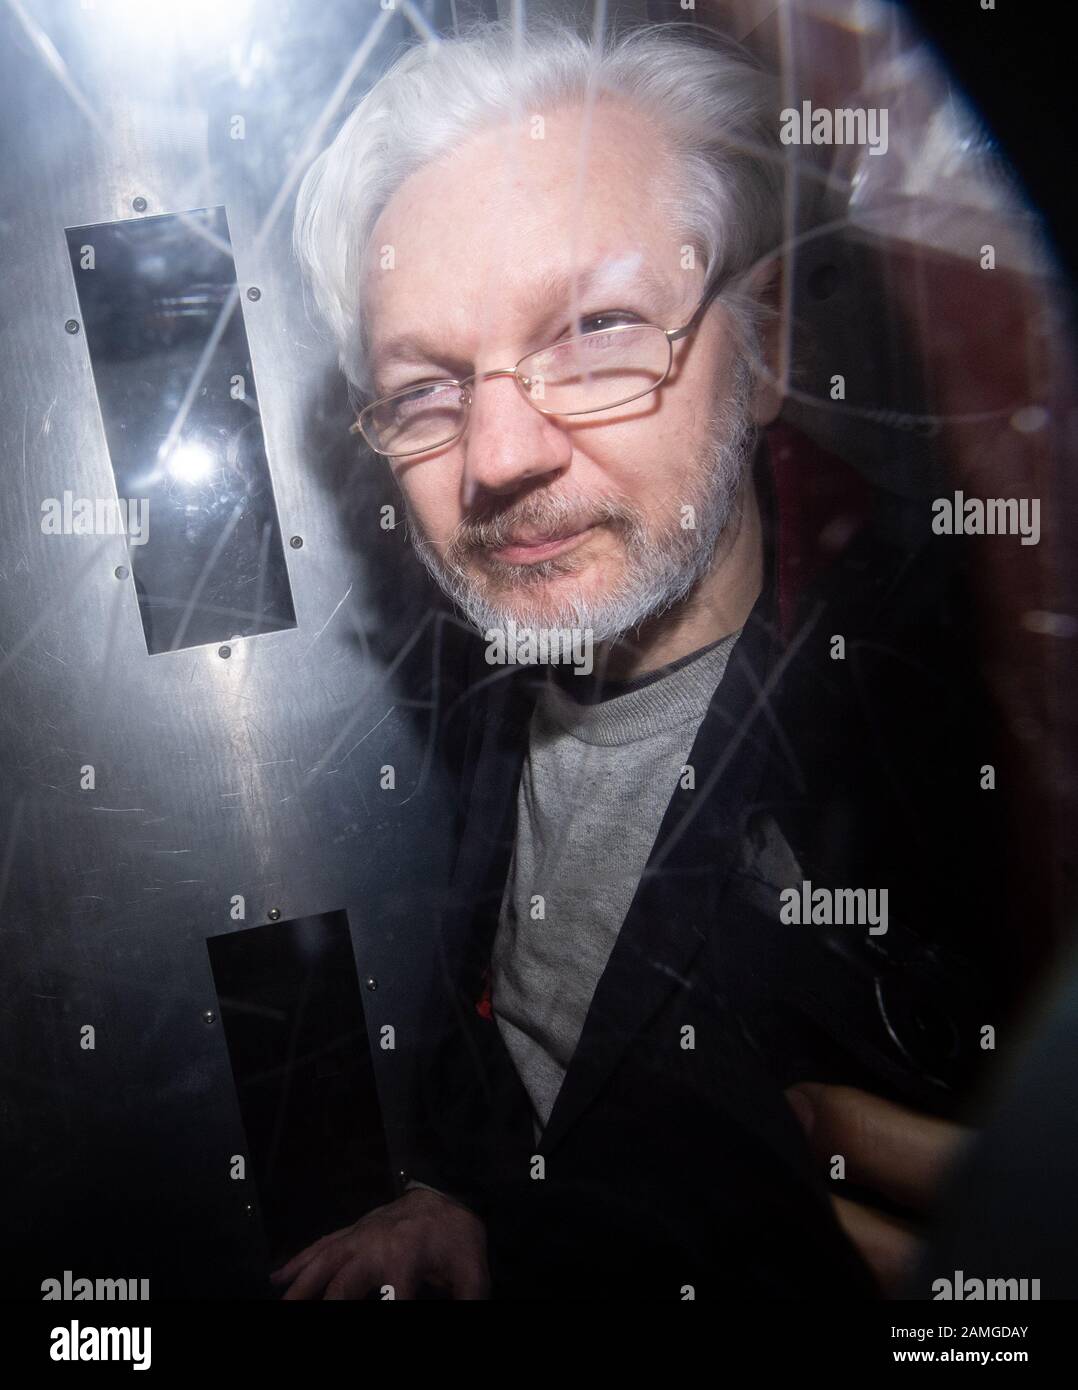 Wikileaks-Gründer Julian Assange verlässt den Westminster Magistrates Court, London, wo er für eine administrative Anhörung im Zusammenhang mit seiner Auslieferung in die Vereinigten Staaten wegen der Vorwürfe, er habe sich verschworen, in einen klassifizierten Pentagon-Computer einzubrechen, erschien. Stockfoto